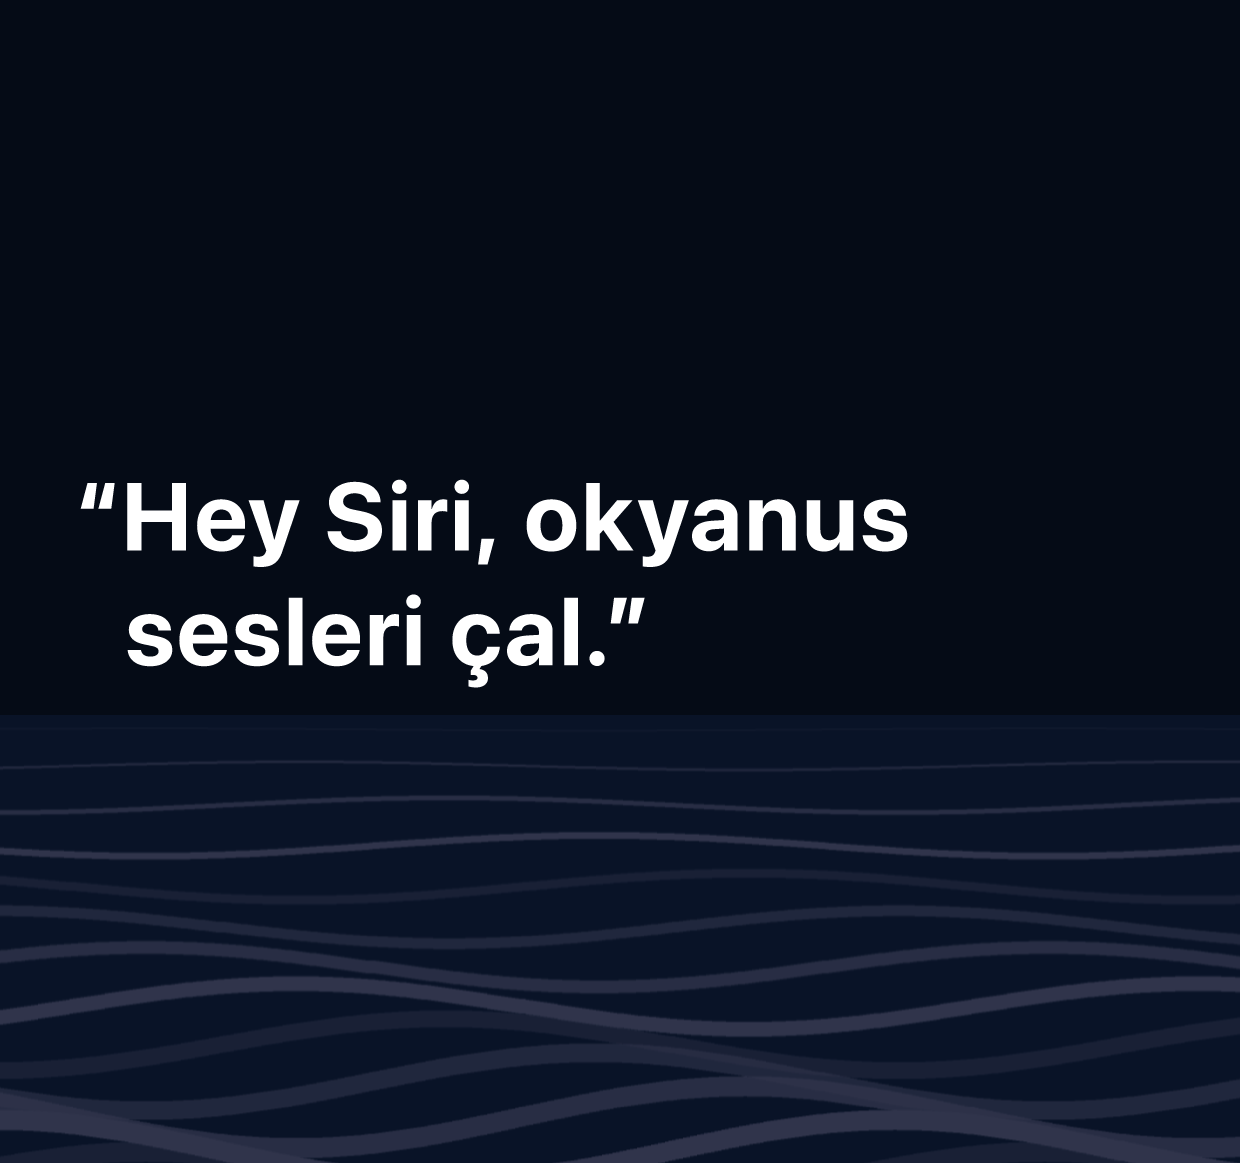 “Hey Siri, okyanus sesleri çal” sözcüklerinin gösterildiği bir resim.